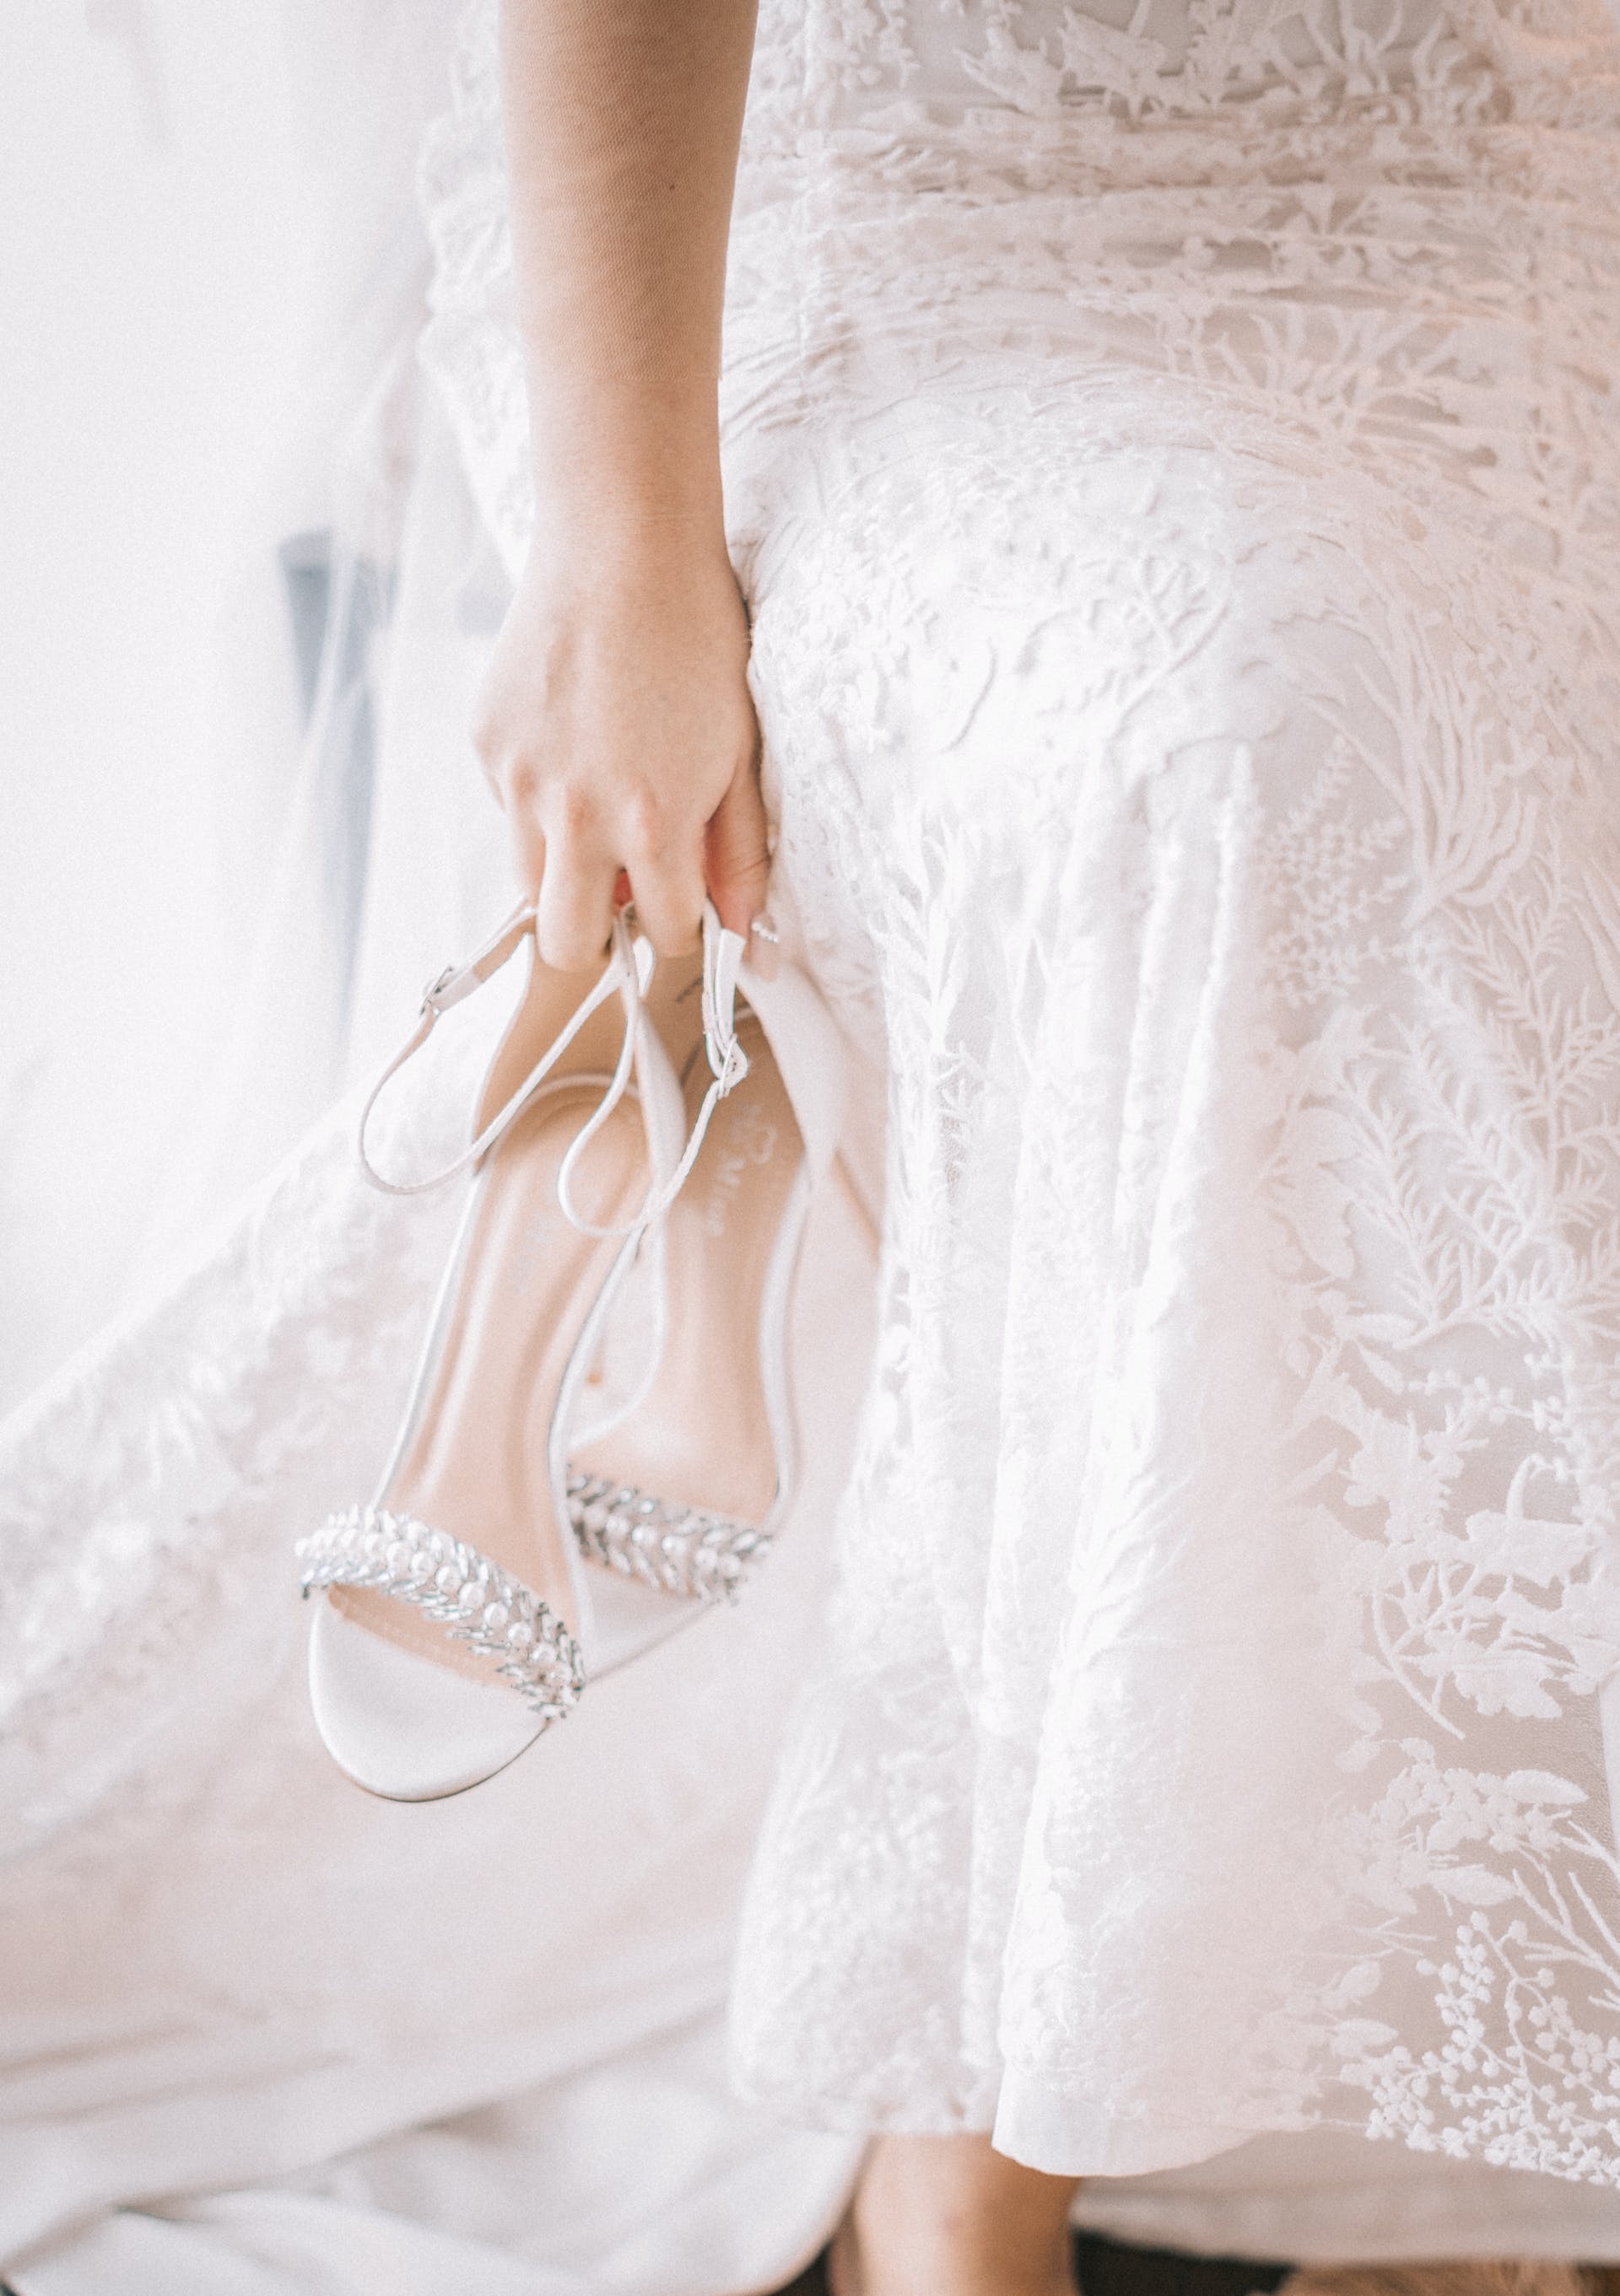 Die Braut hält ihre Schuhe | Quelle: Pexels